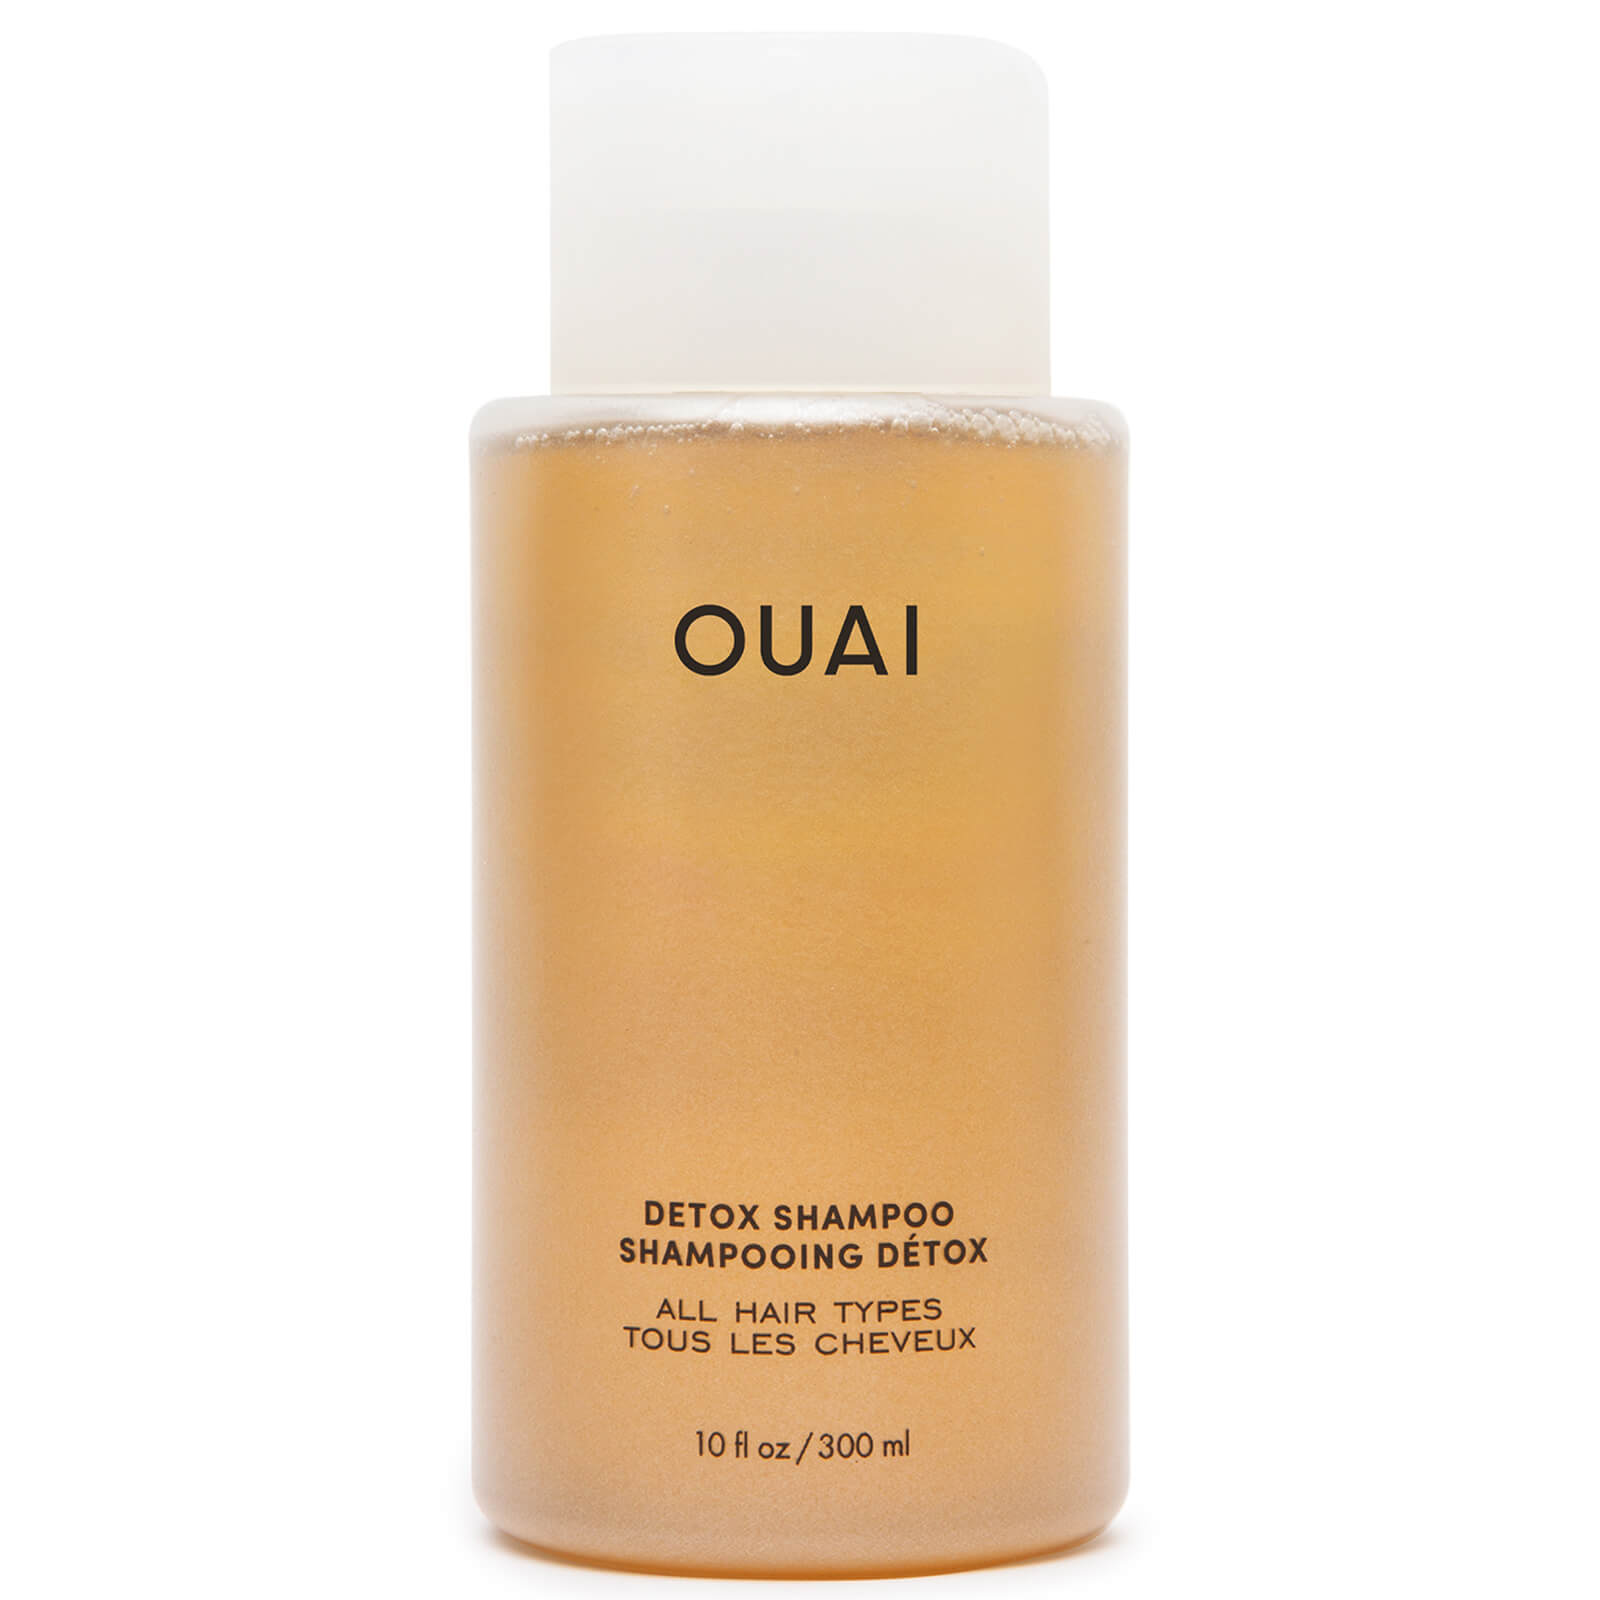 Image of OUAI Detox Shampoo 300ml